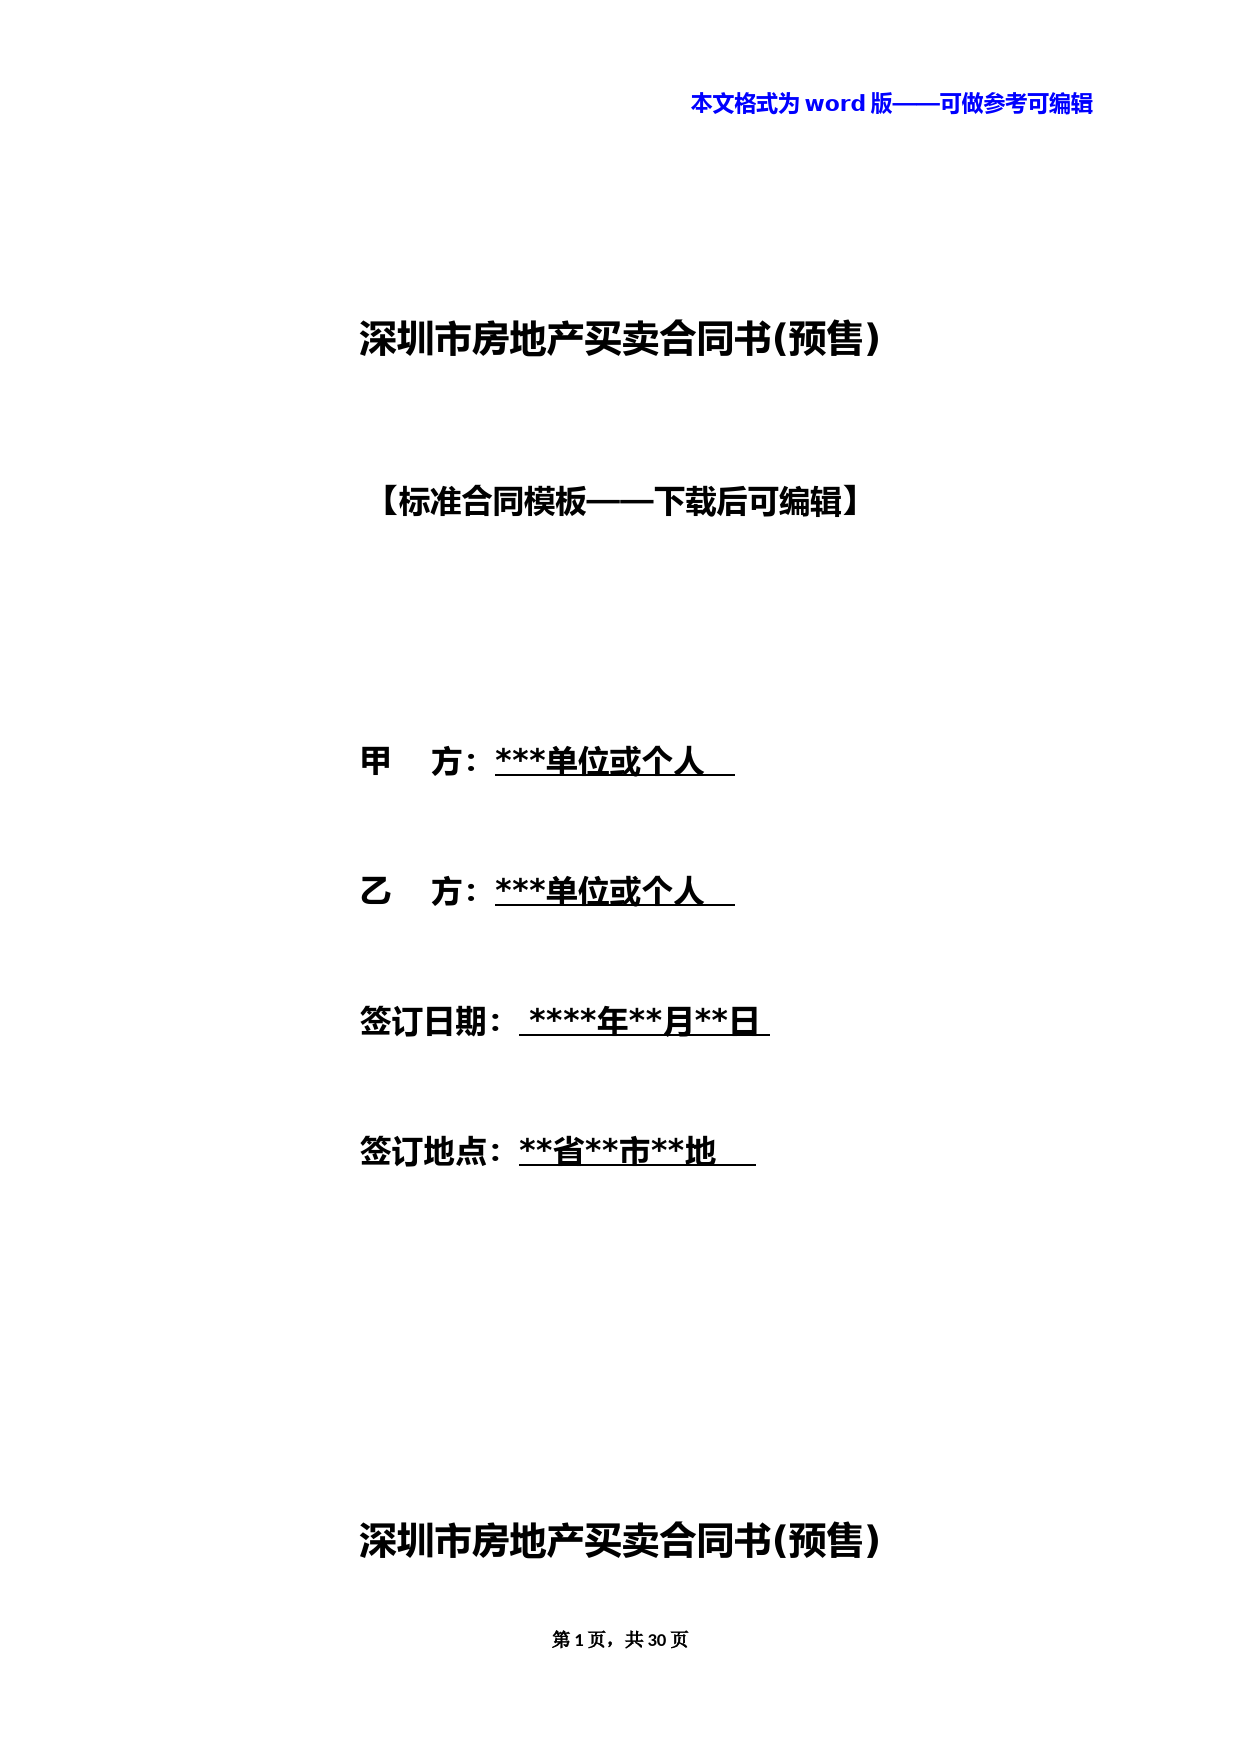 深圳市房地产买卖合同书(预售)(标准版)